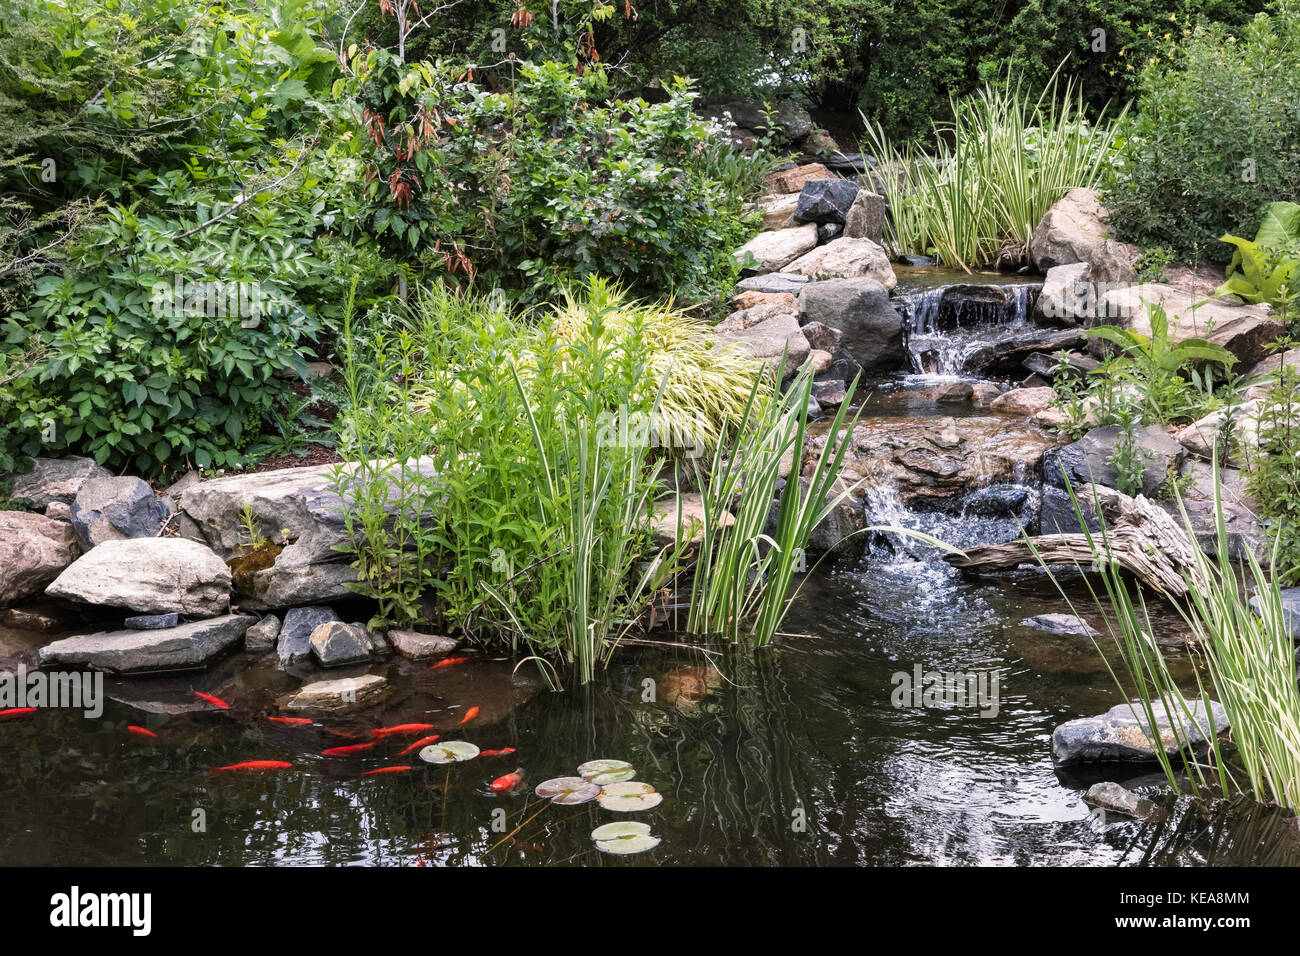 Jardin d'eau, les jardins botaniques de Denver, Denver, Colorado, USA Banque D'Images